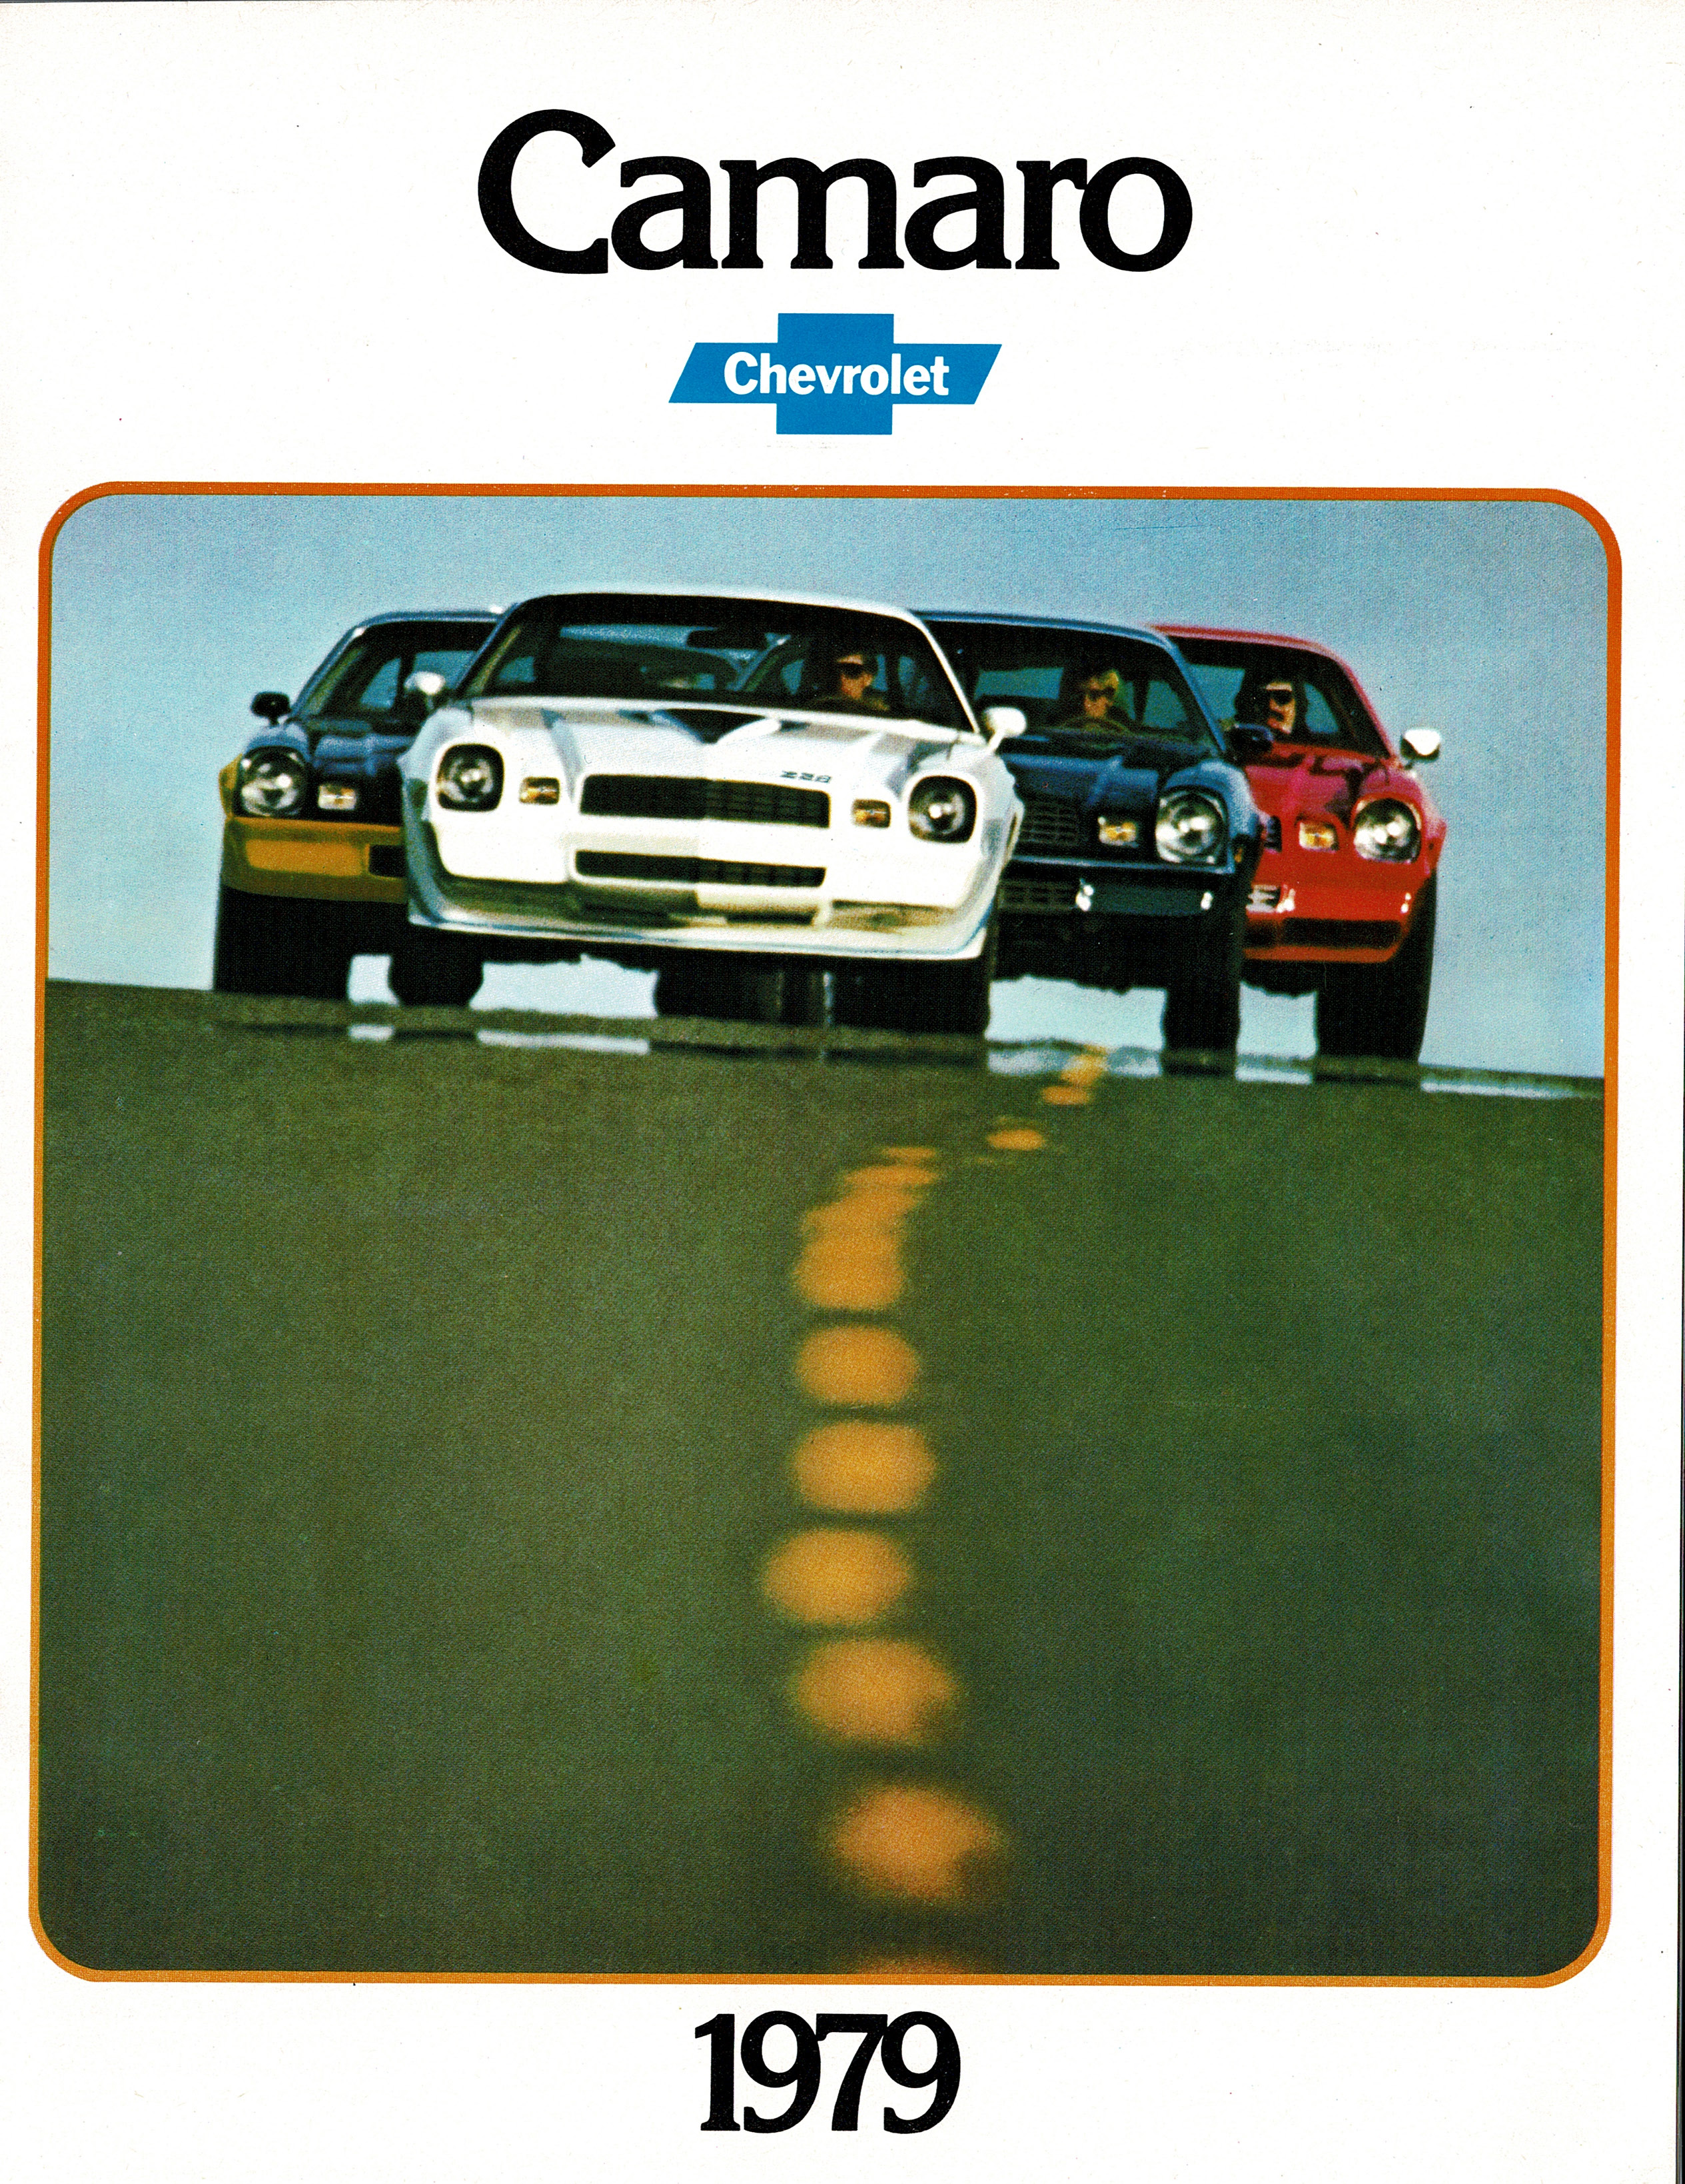 1979 Camaro 09-78 Canada_Page_1